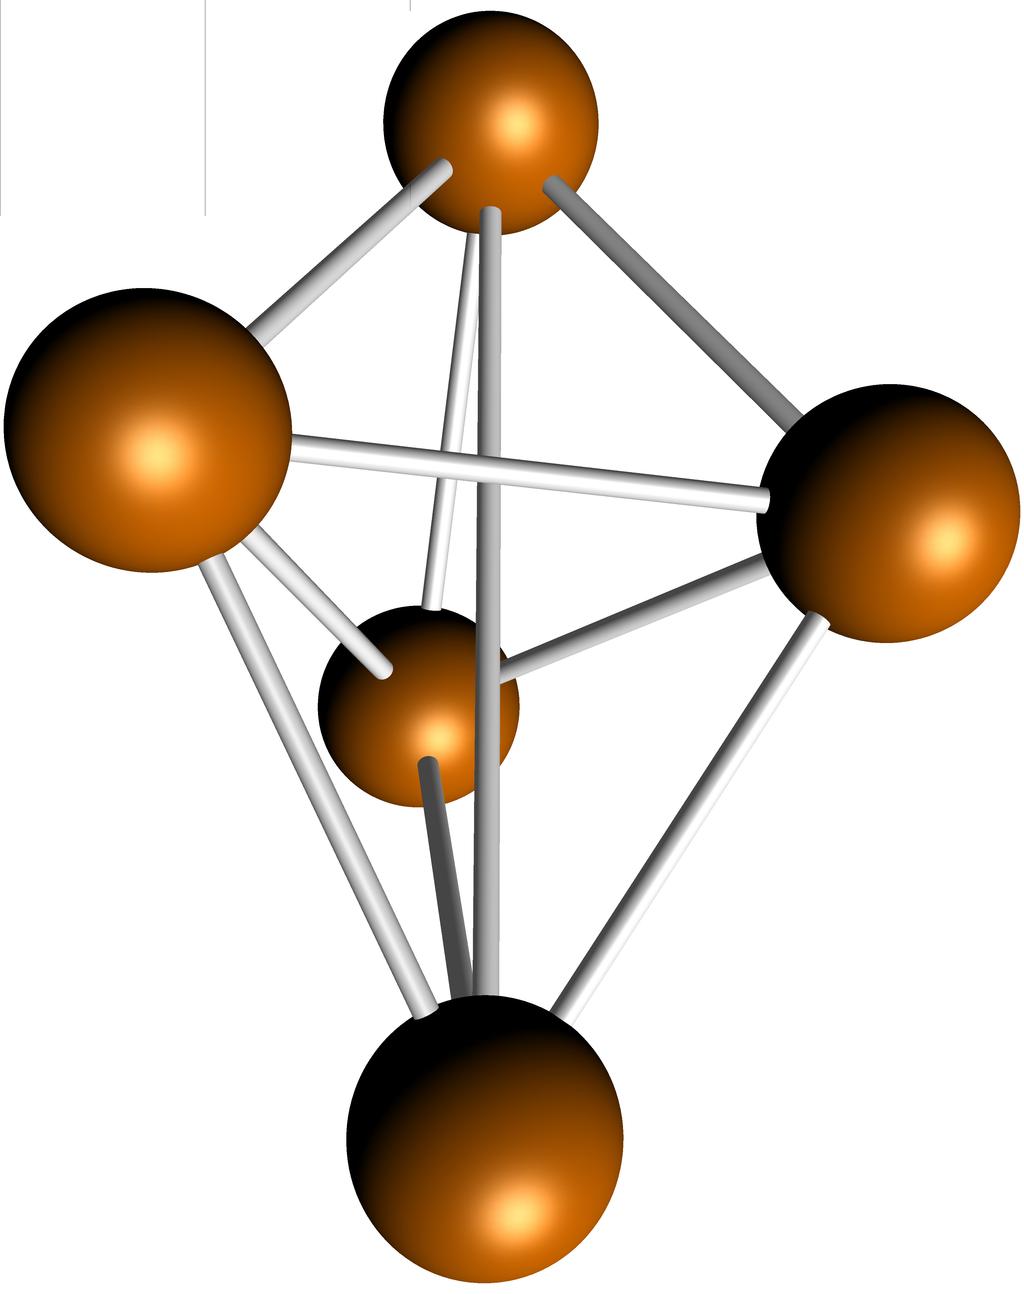 3.1 Atome 1 2 3 4 5 Modèle spatial L atome i est caractérisé par ses coordonnées cartésiennes (xi, yi, zi ) R3. On note x = (x1, y1, z1,.